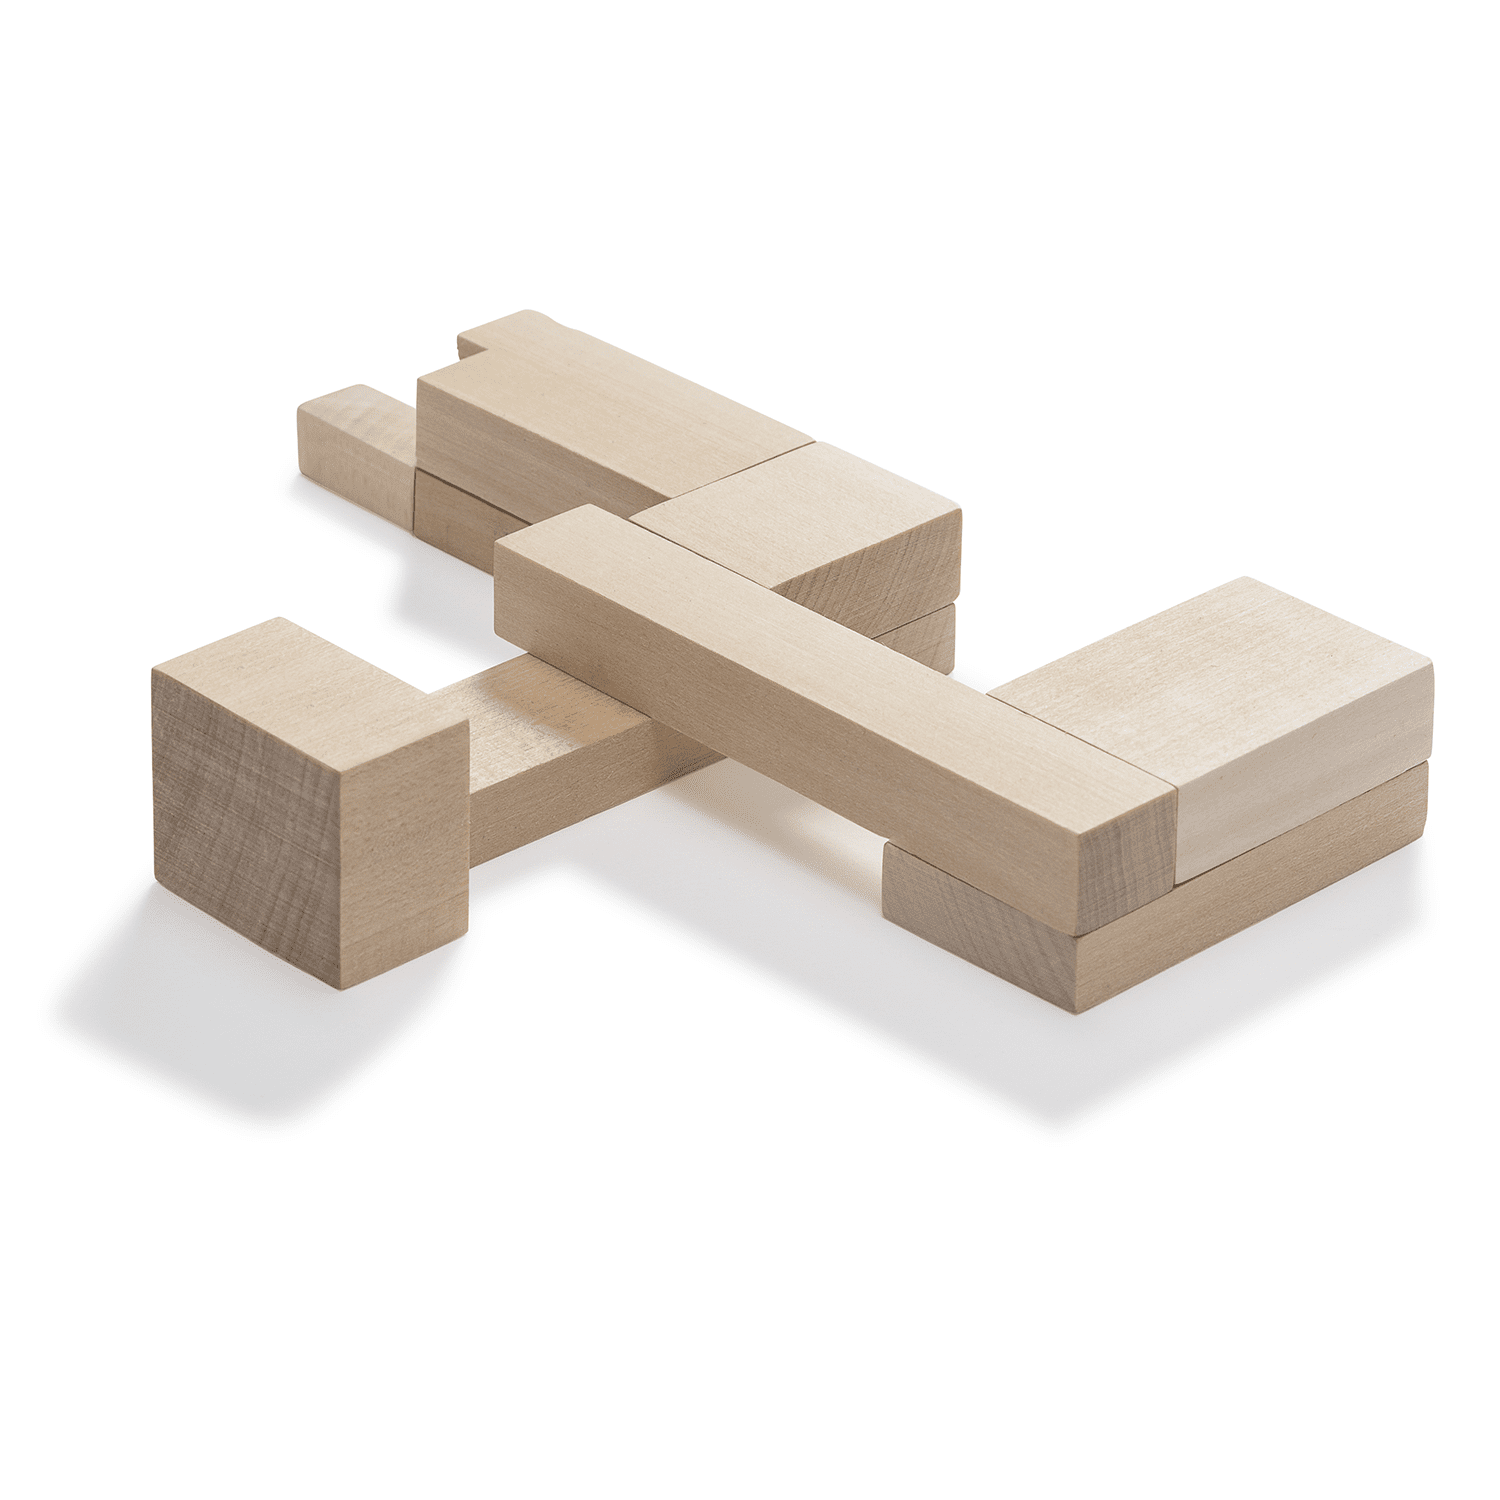 Immagine di Bauhaus Dessau Building Puzzle